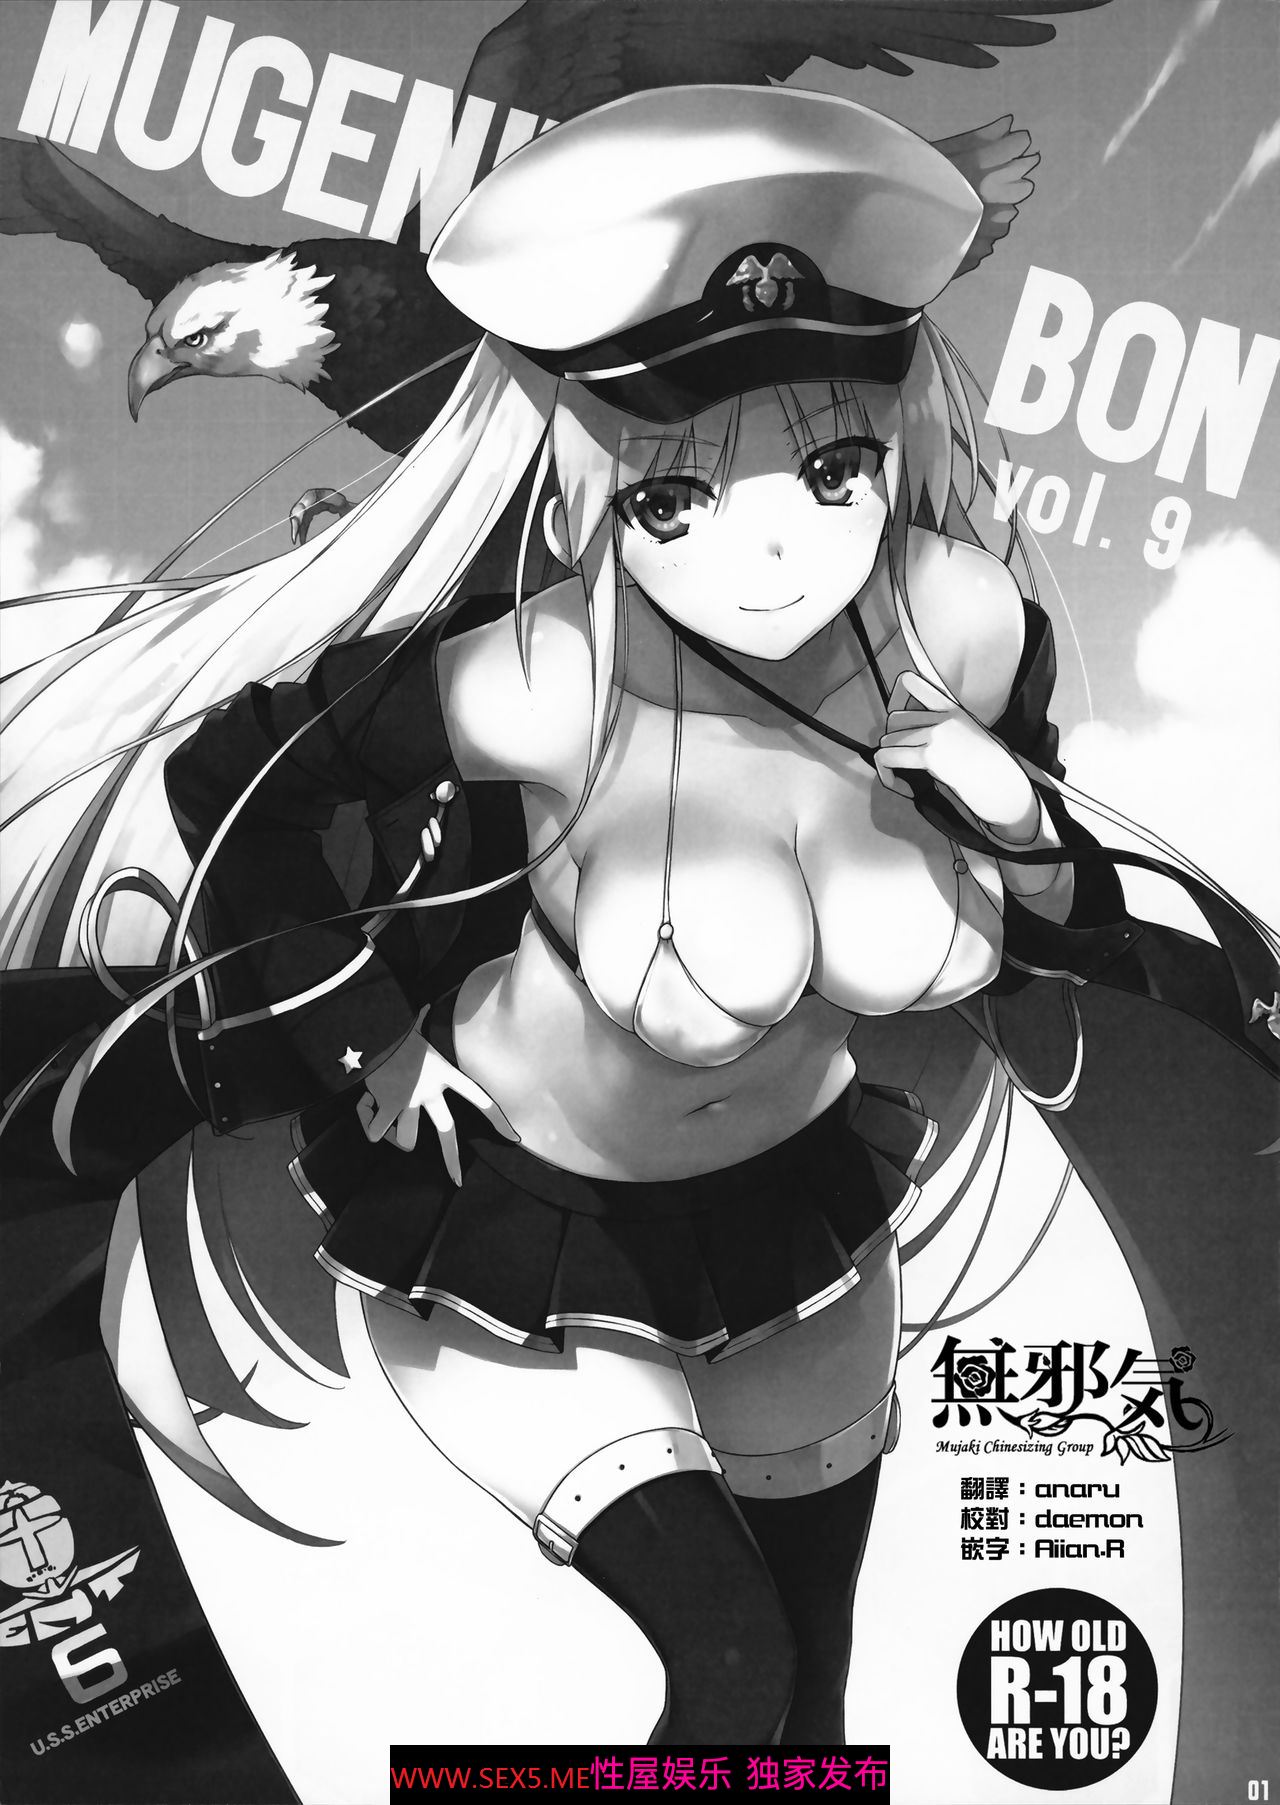 COMIC1☆12) [無限軌道A (トモセシュンサク)] MUGENKIDOU BON! Vol.9 (アズールレーン) [20P]